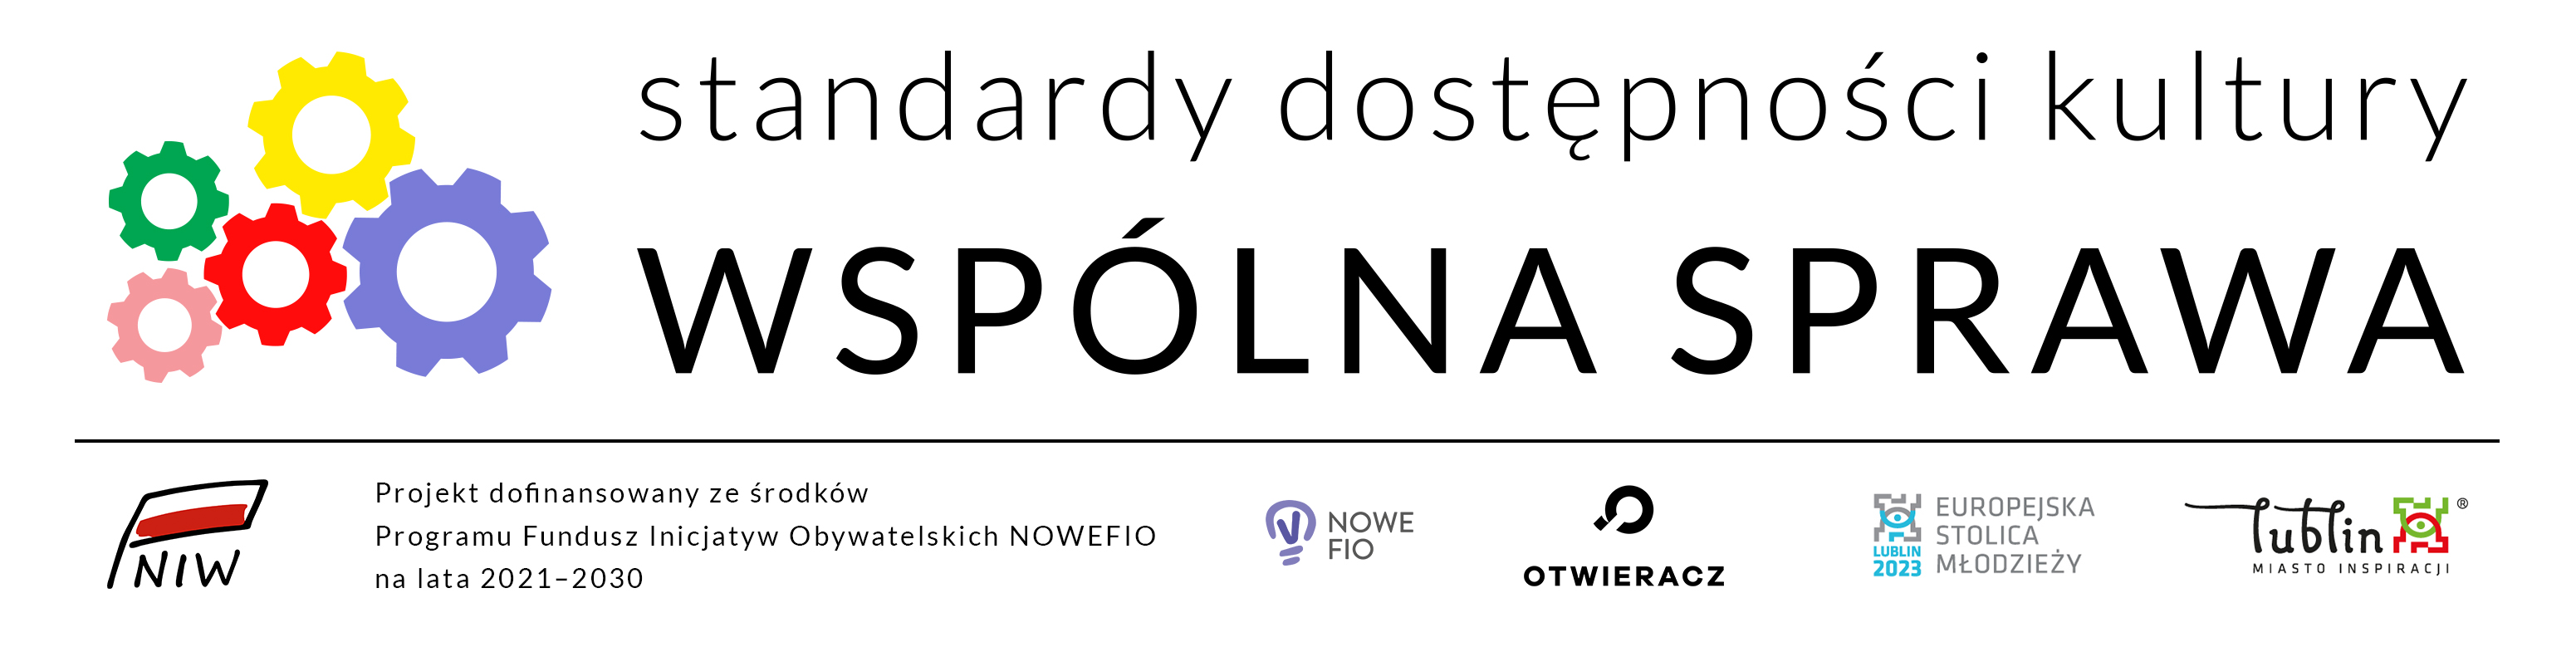 Logo projektu Standardy dostępności kultury wspólna sprawa oraz logo NIW, NOWEFIO, Otwieracz, Europejska Stolica Młodzieży, Lublin miasto inspiracji